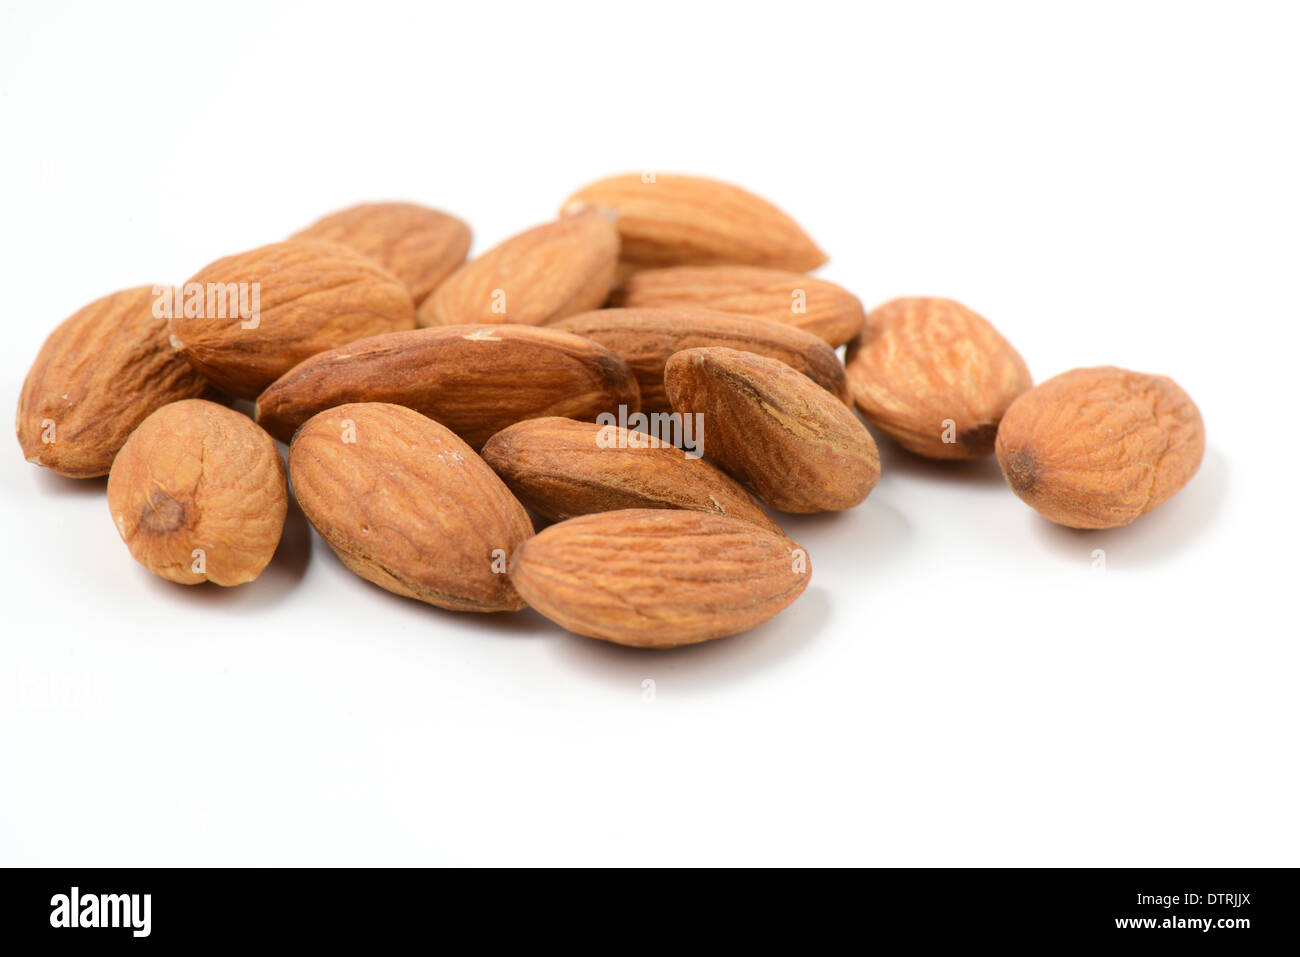 Almonds on White Background Stock Photo